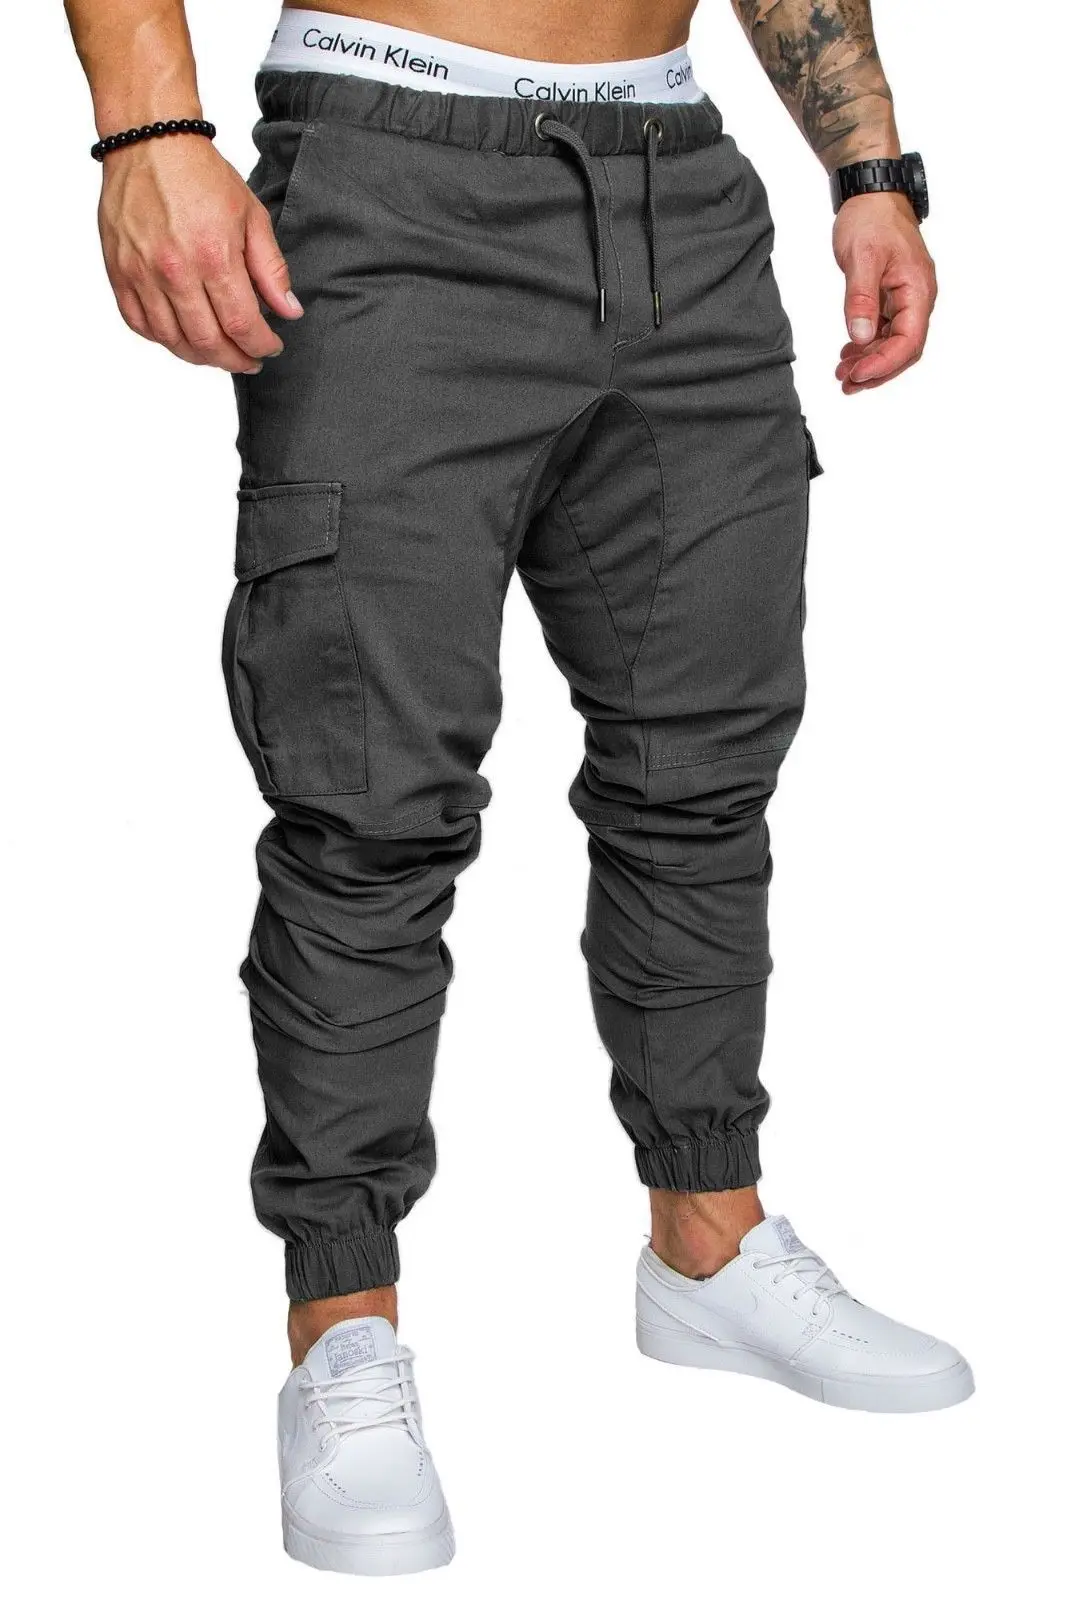 Ropa De Hombre карго прямые брюки карманы полная длина тонкие брюки повседневные мужские брюки карго Брюки мужские уличные плиссированные повседневные - Цвет: Dark Grey